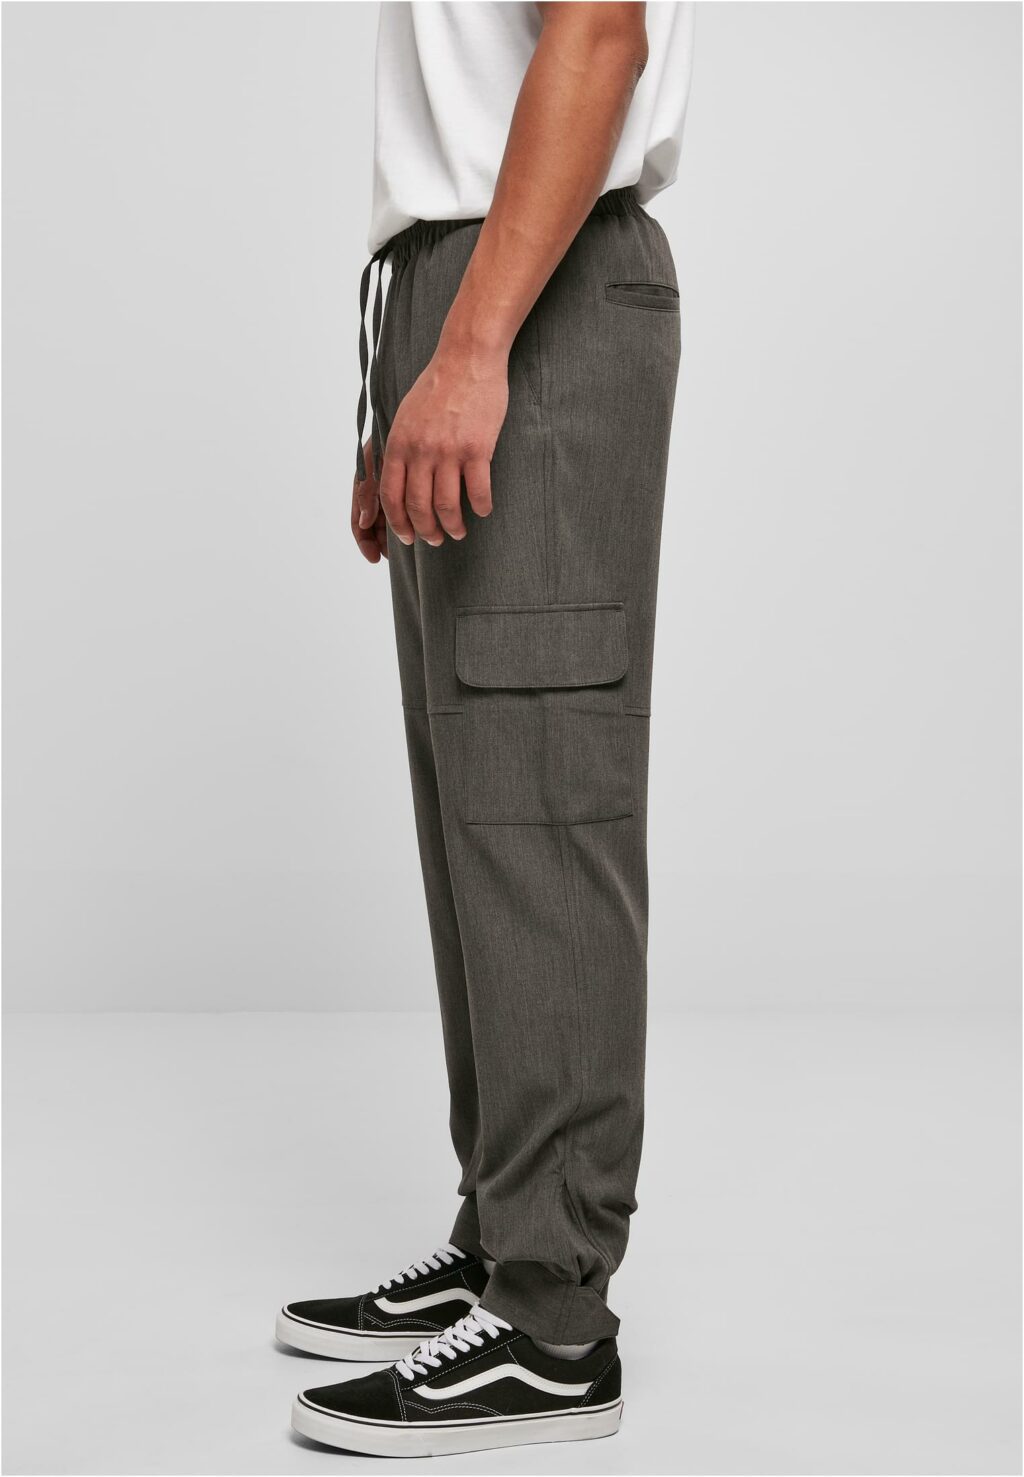 Urban Classics Comfort Military Pants charcoal TB5583